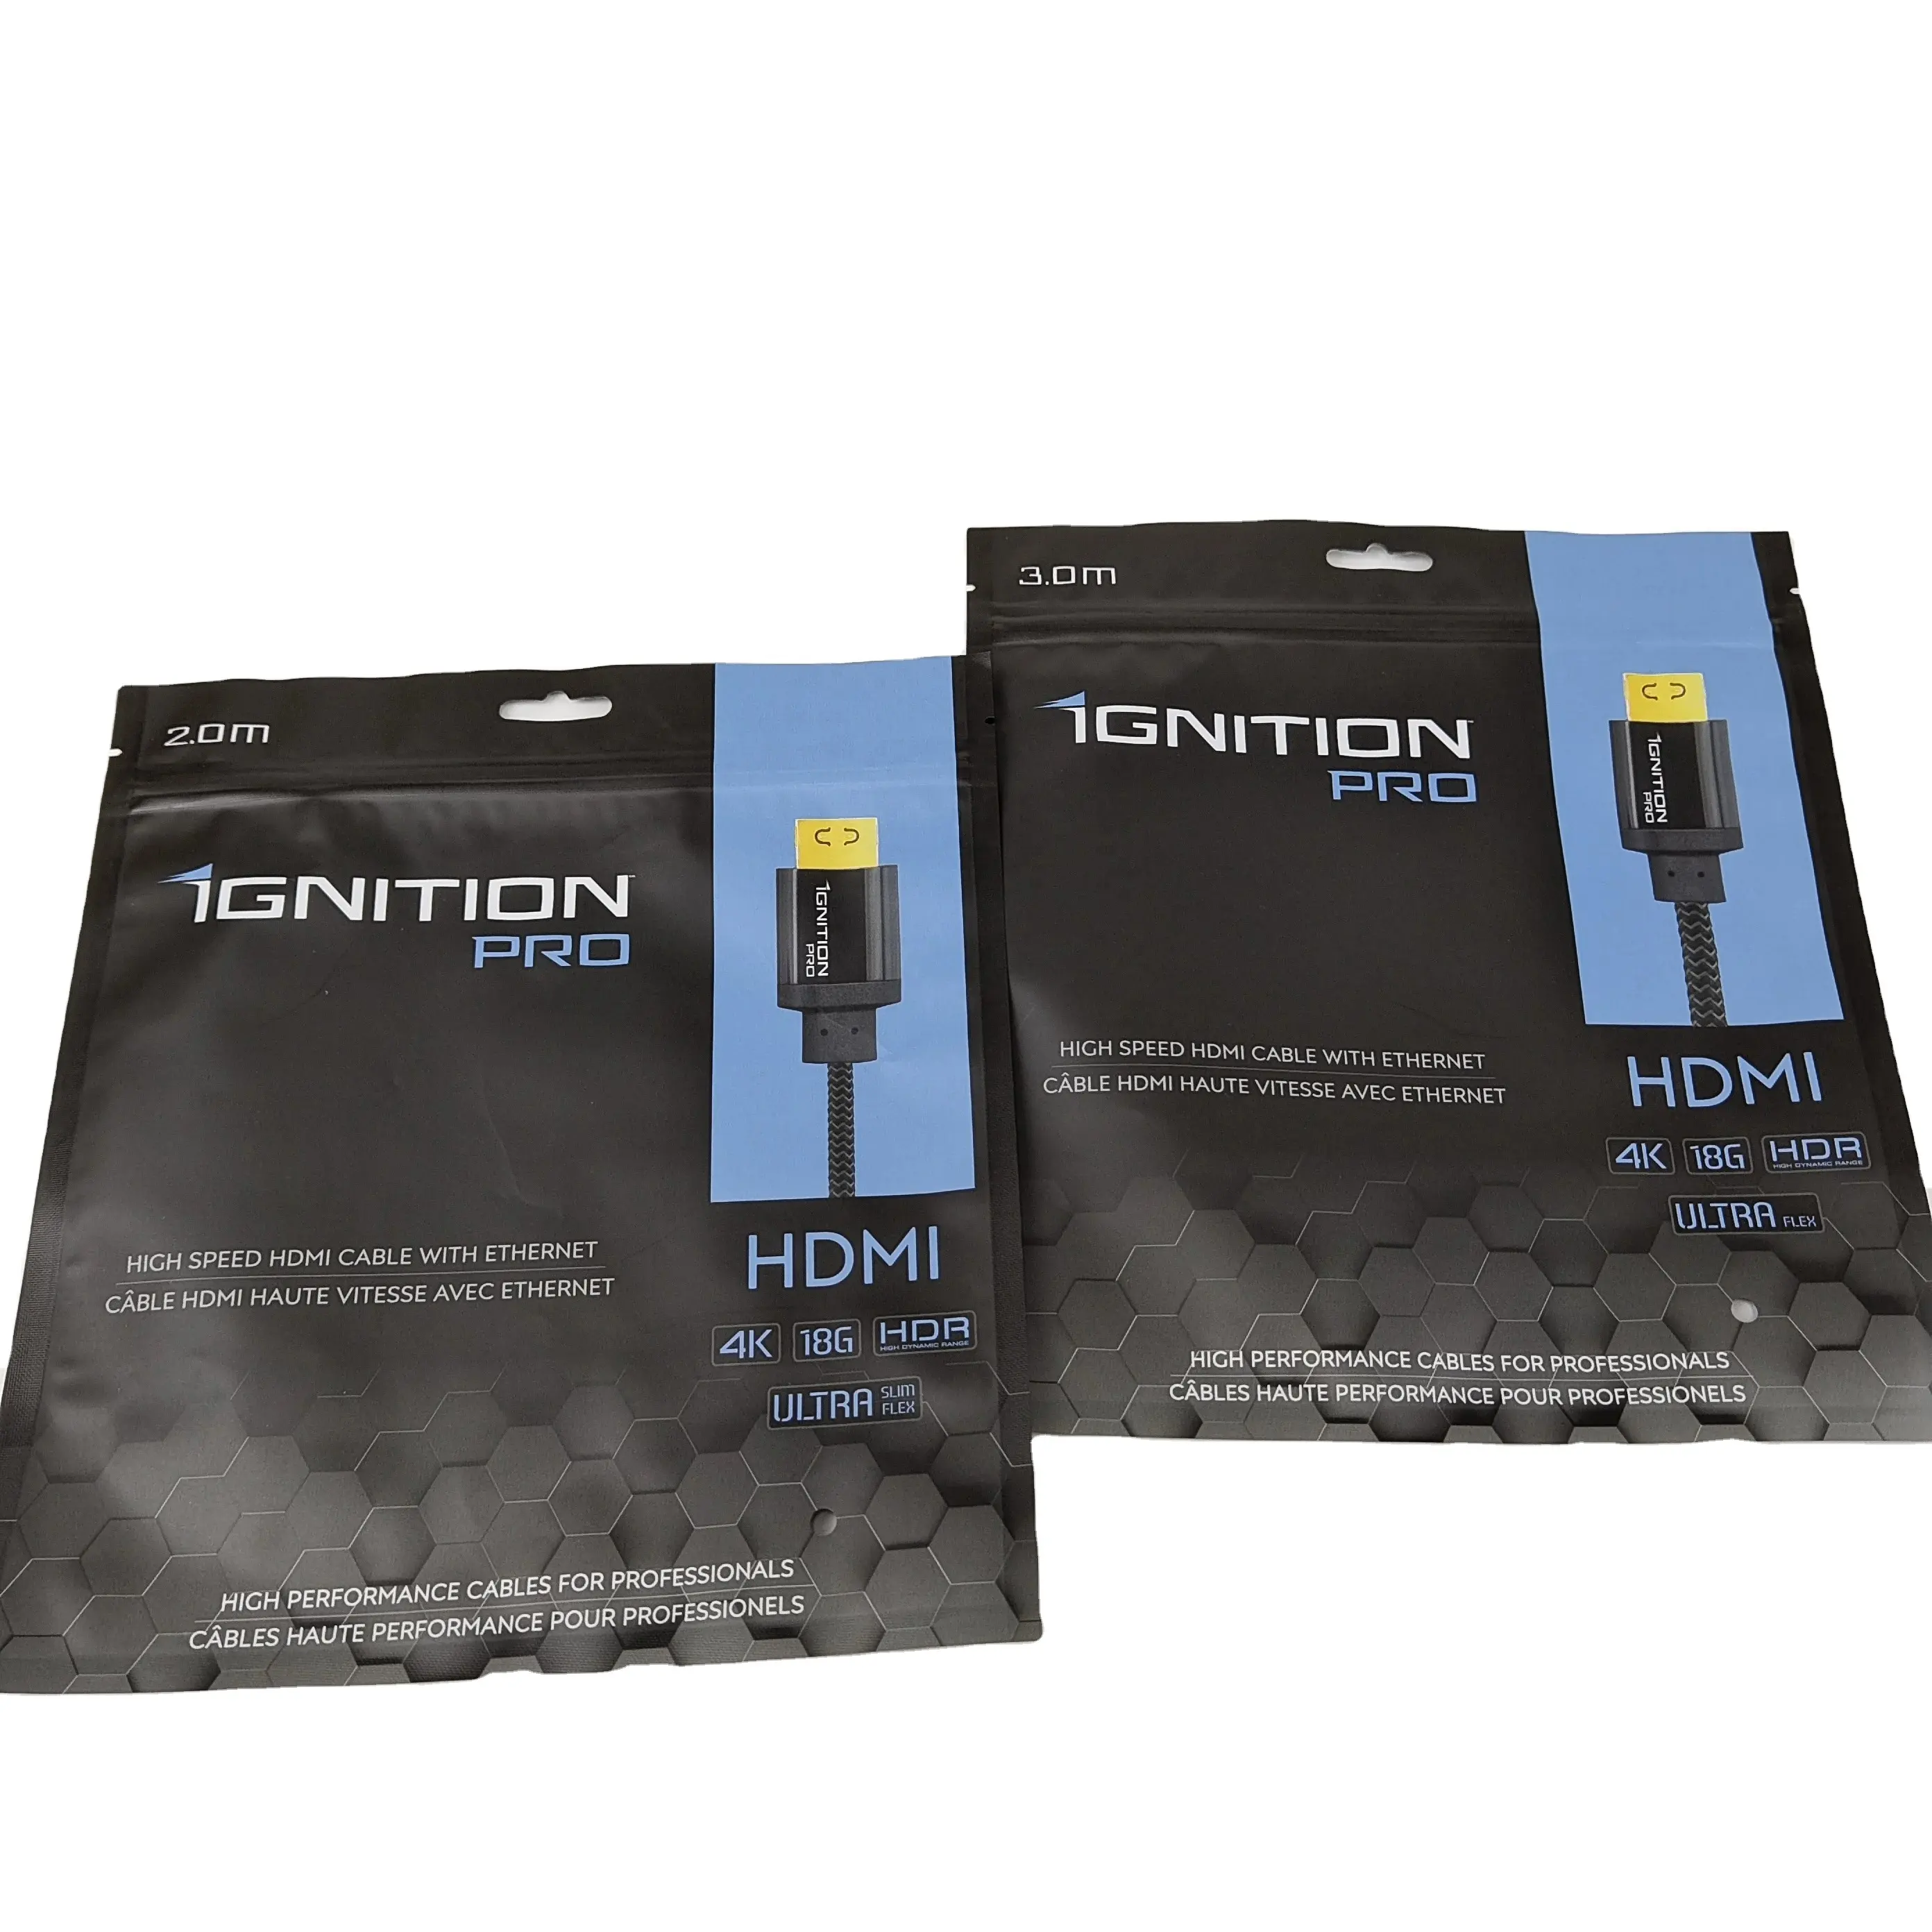 สาย HDMI ความเร็วสูงพร้อมอีเธอร์เน็ตสำหรับมืออาชีพที่มีช่วงไดนามิกสูง4K 18g